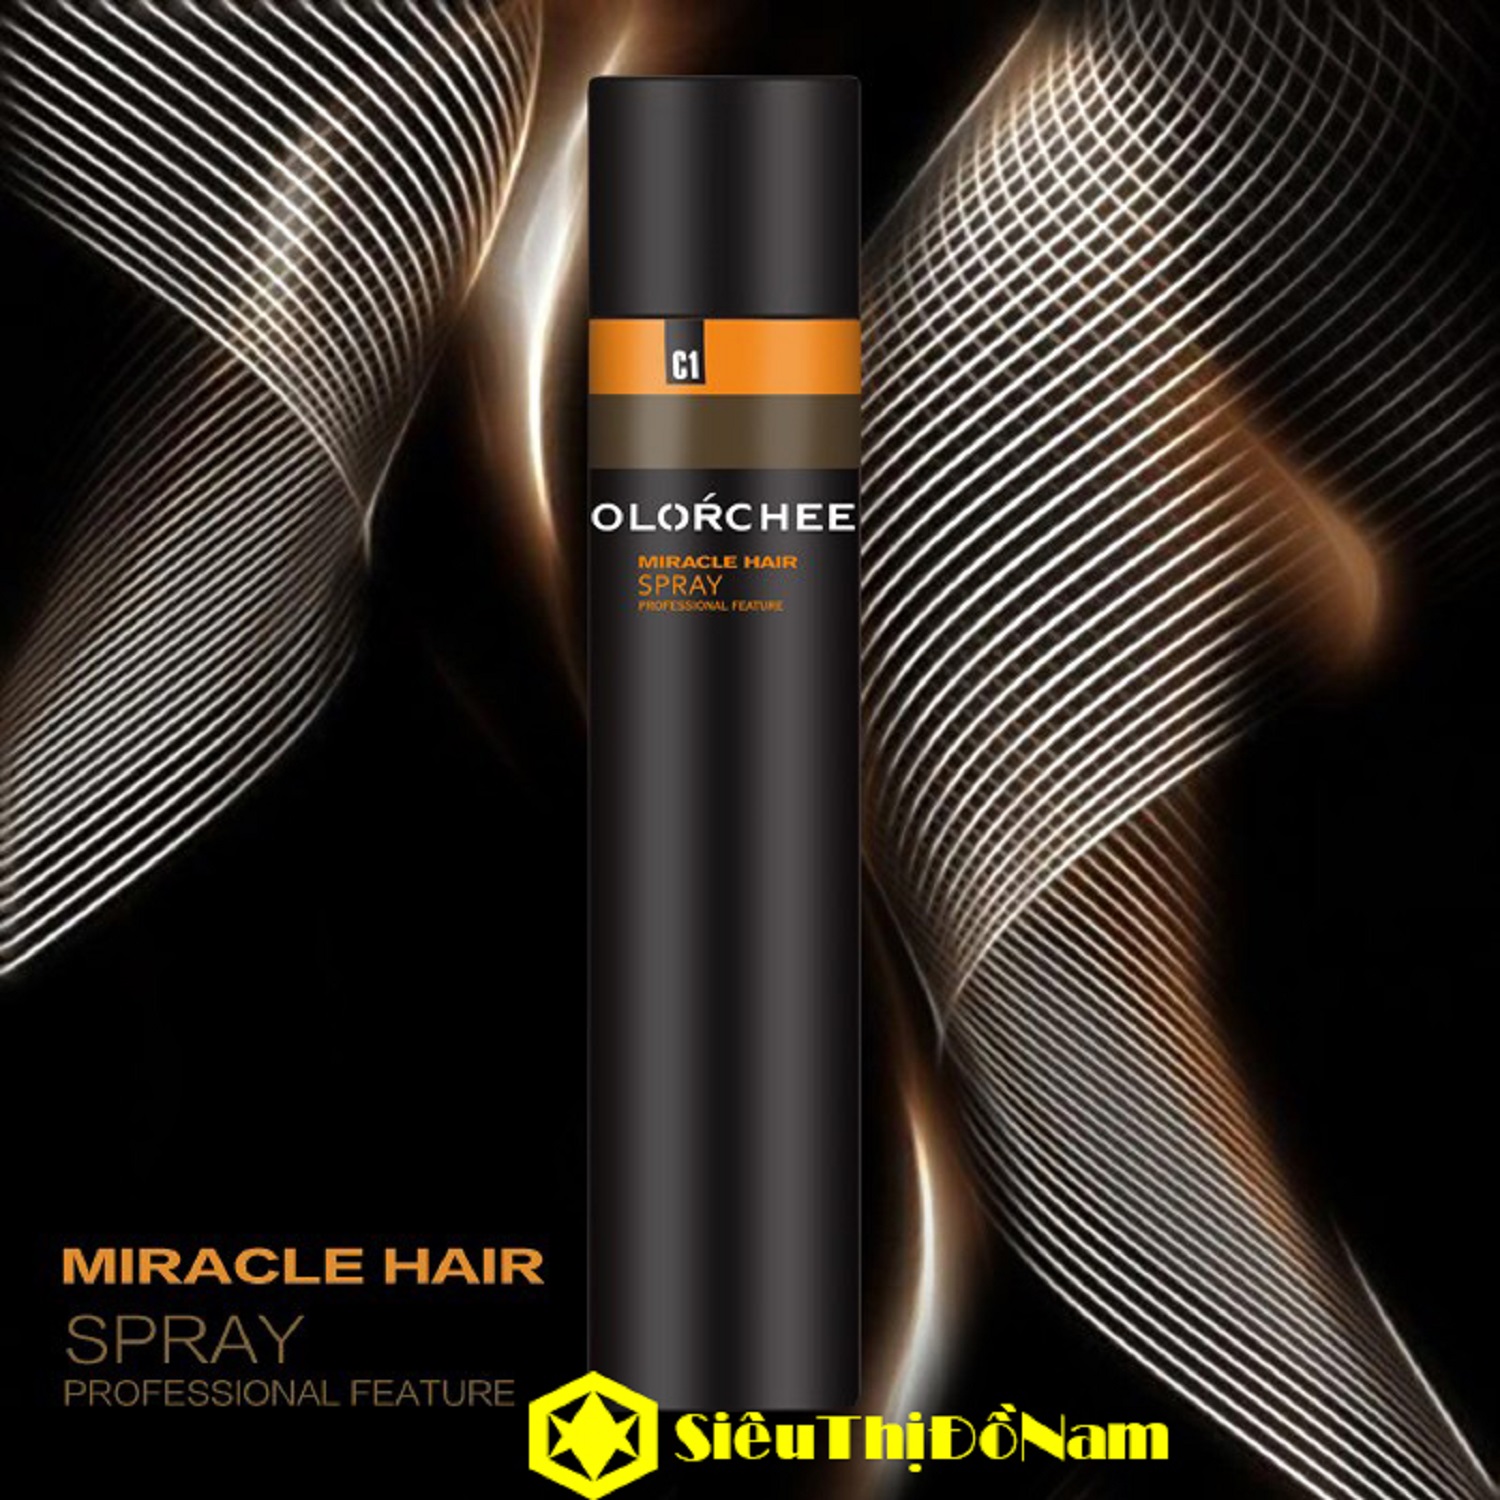 gom xit toc miracle hair moi,được ưa chuộng nhất, bảo vệ và chăm sóc tóc, thích hợp cho mọi loại tóc và da đầu